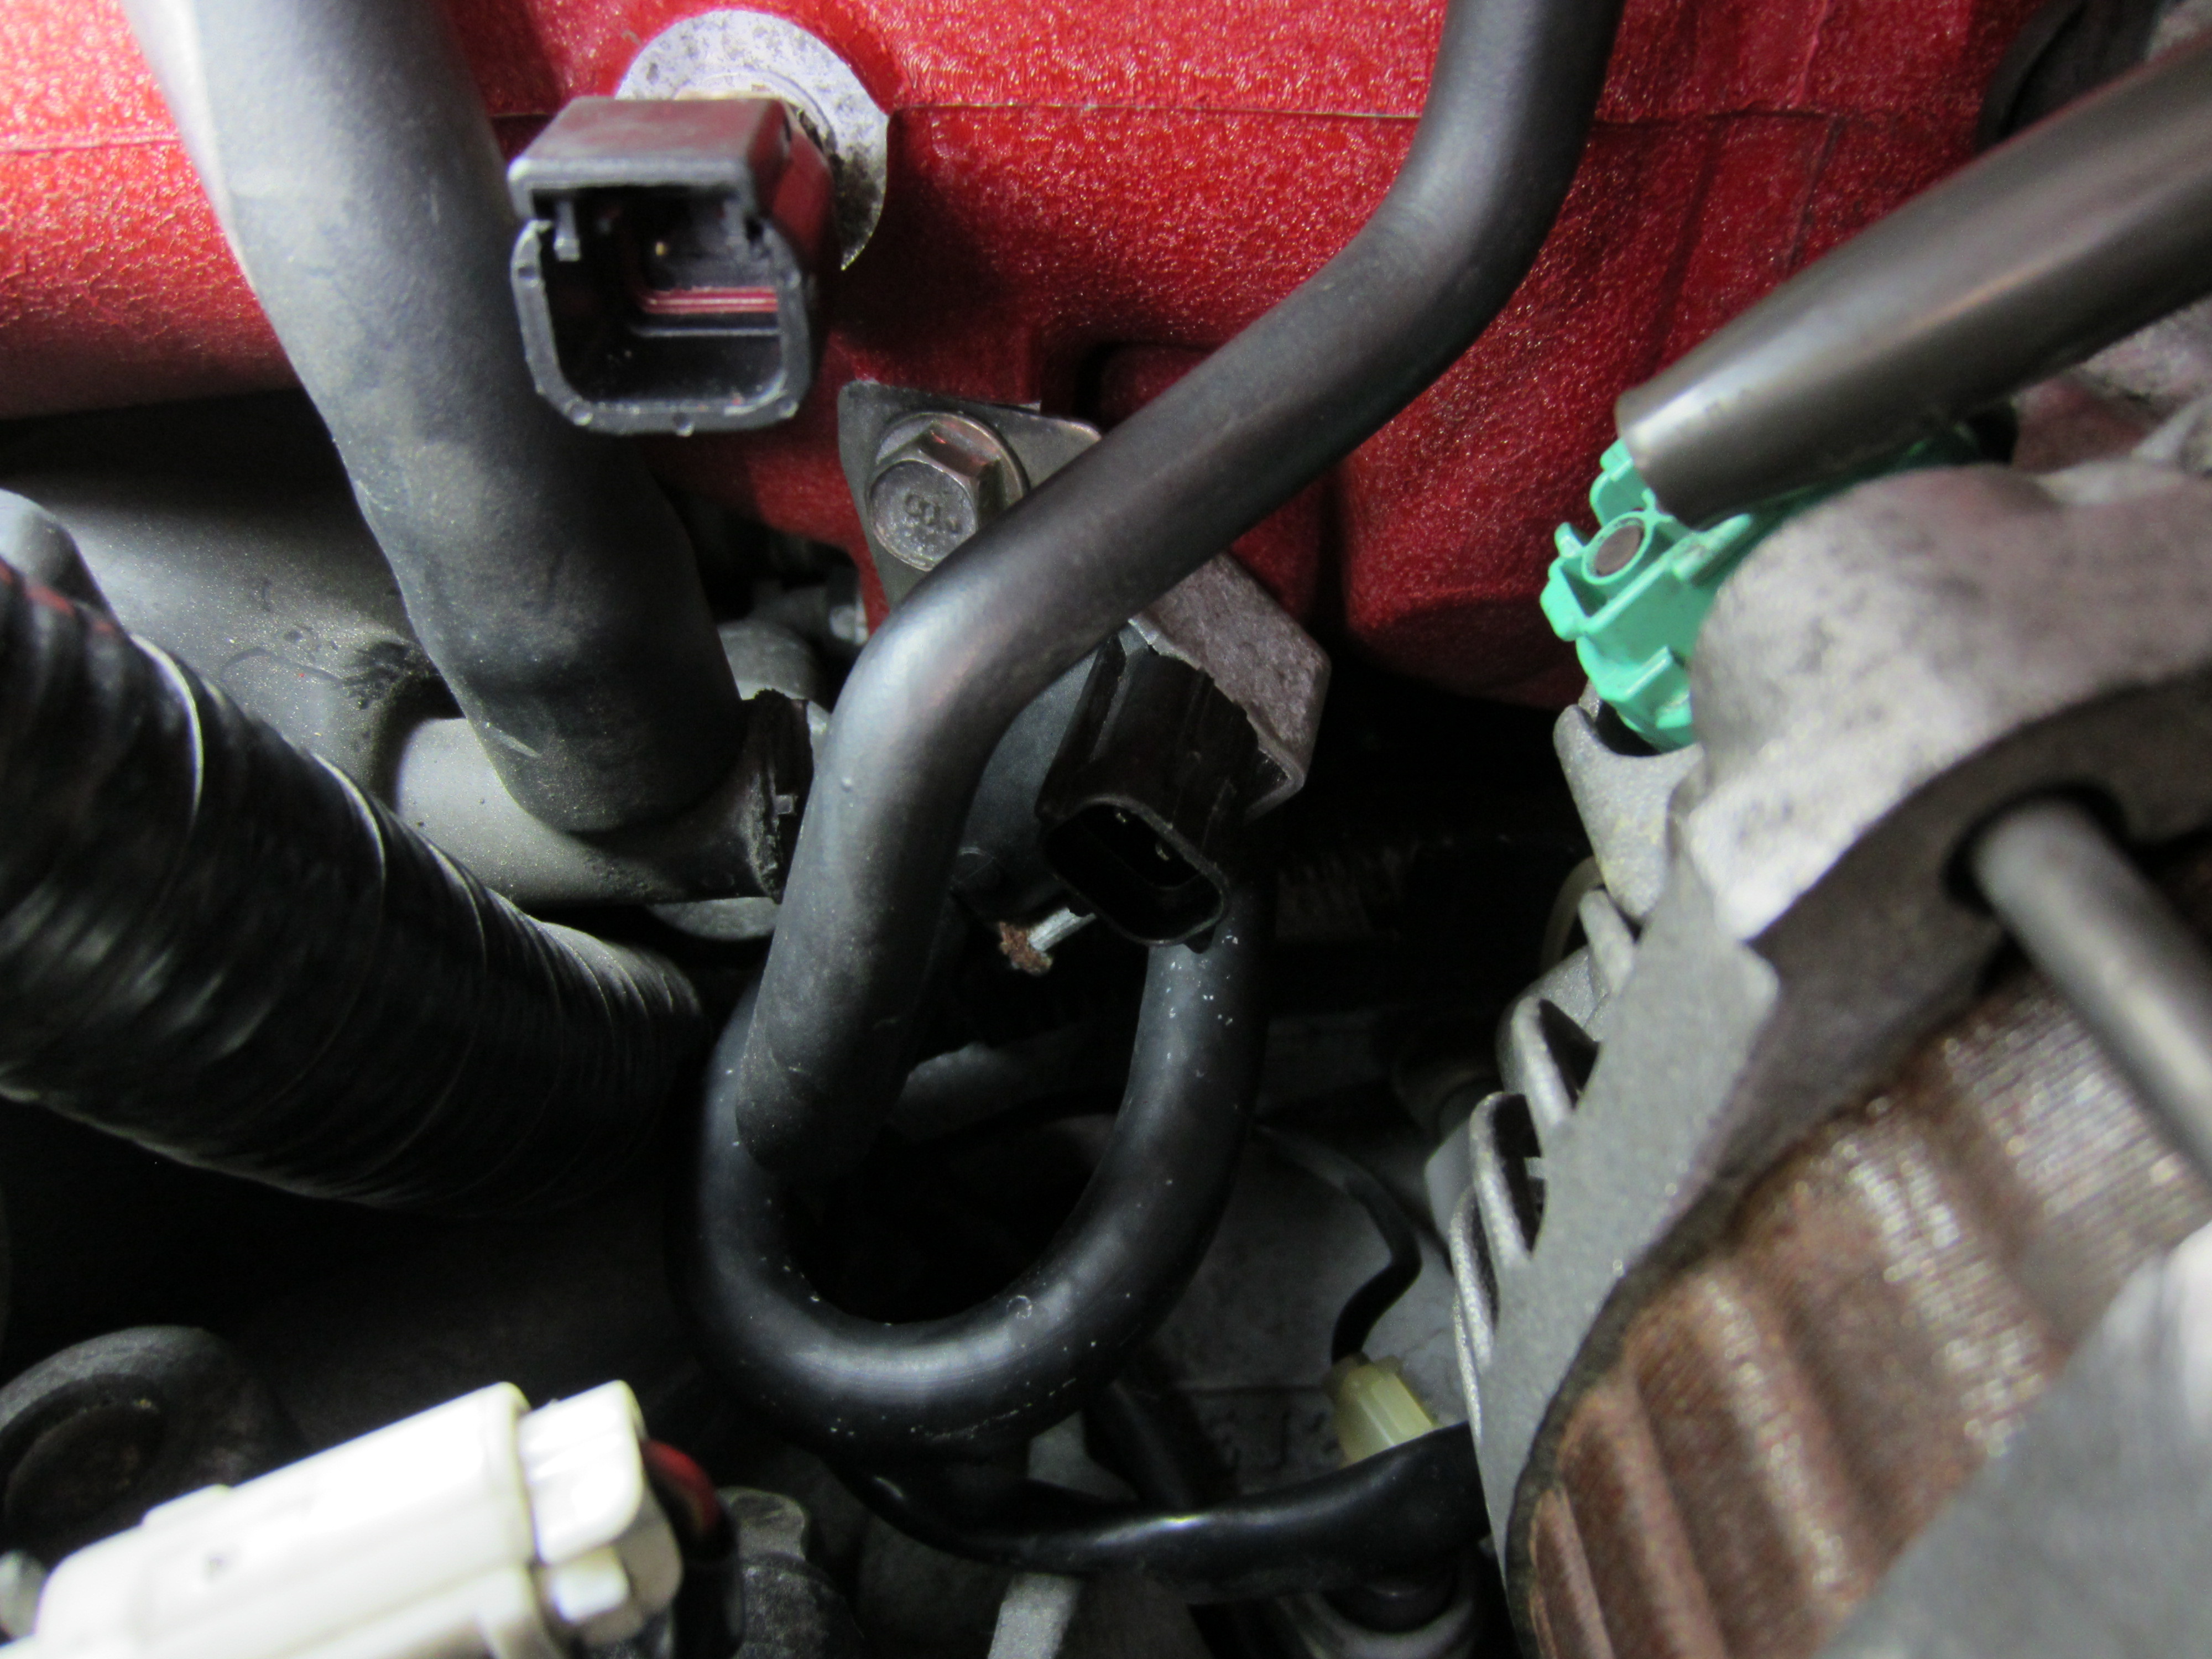 2002-2003 subaru non-turbo impreza brake wiring diagram